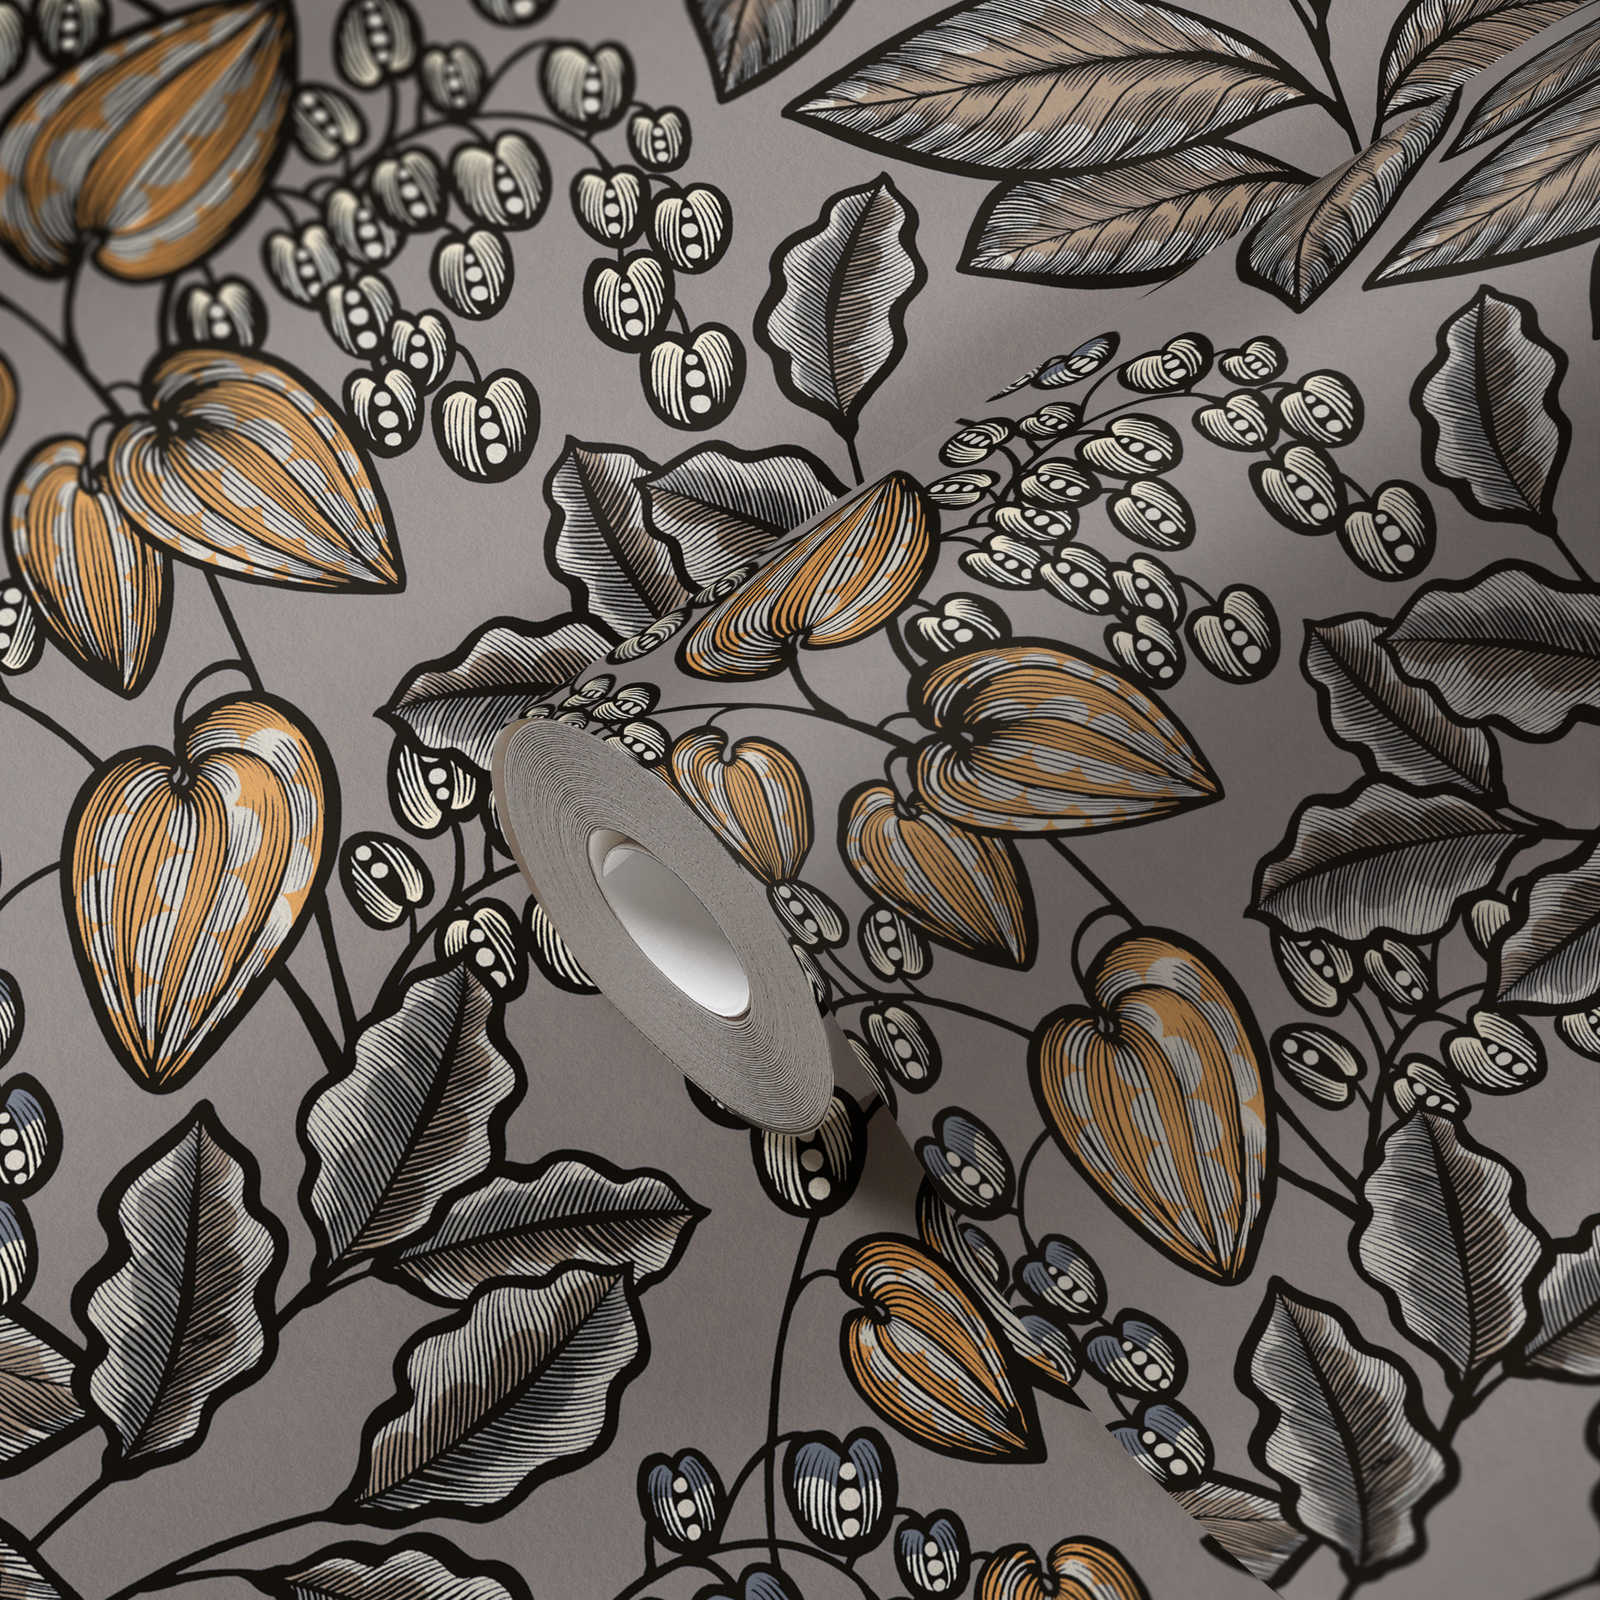             Papel pintado Diseño de hojas en color gris con detalles en amarillo mostaza - Gris, marrón, amarillo
        